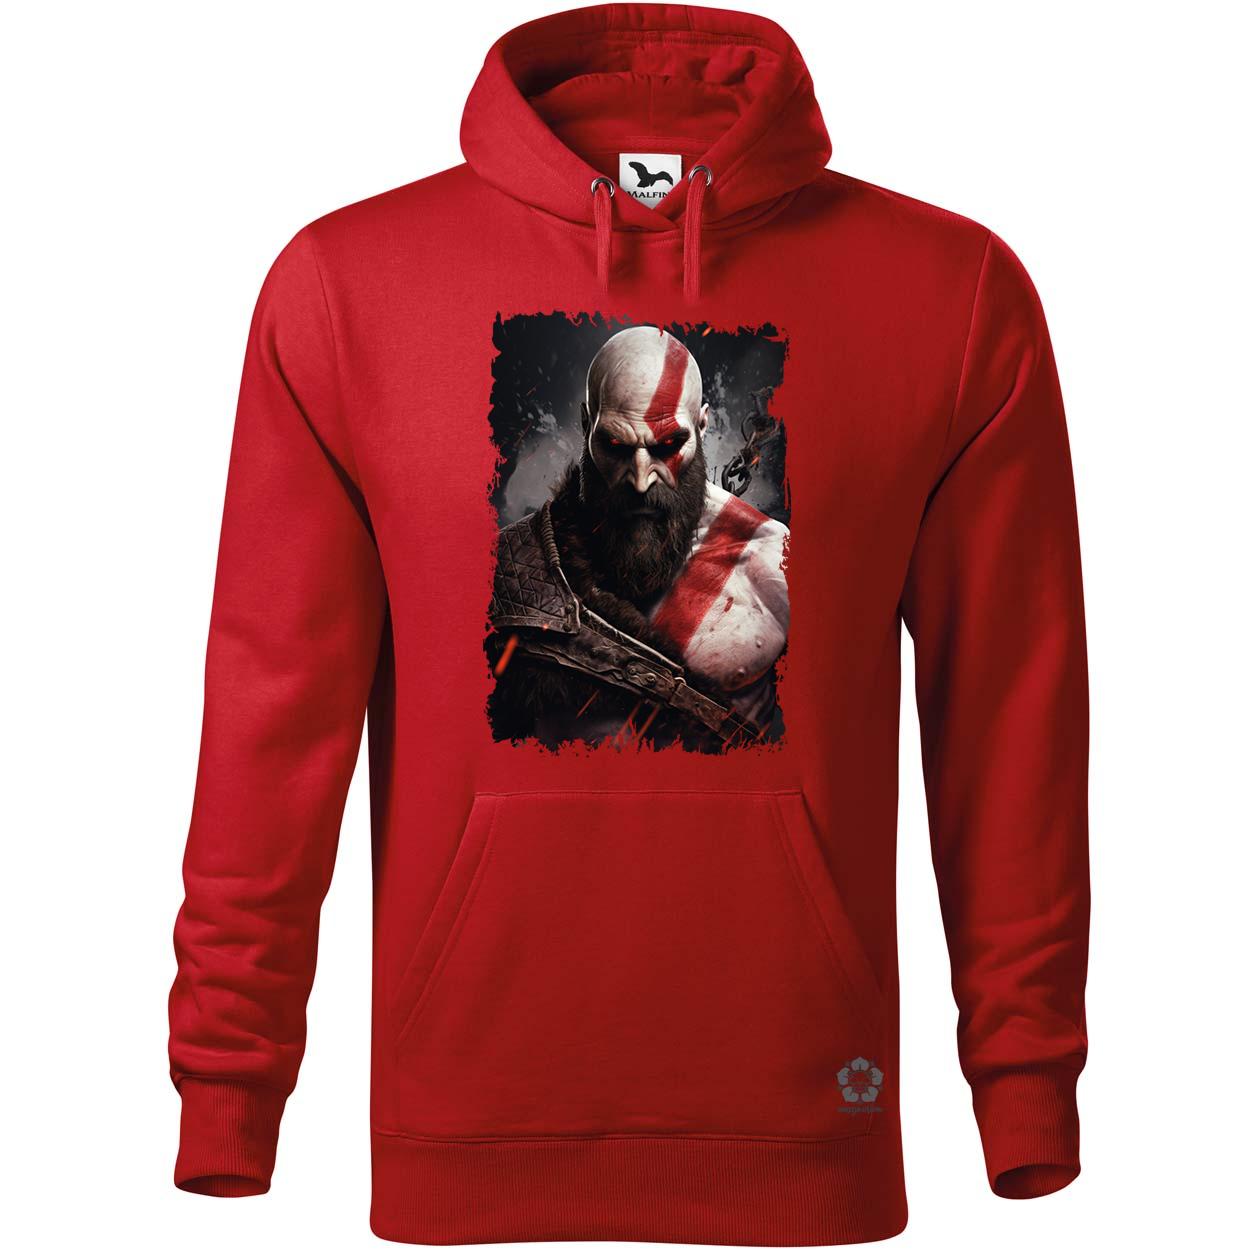 Kratos fanart v9